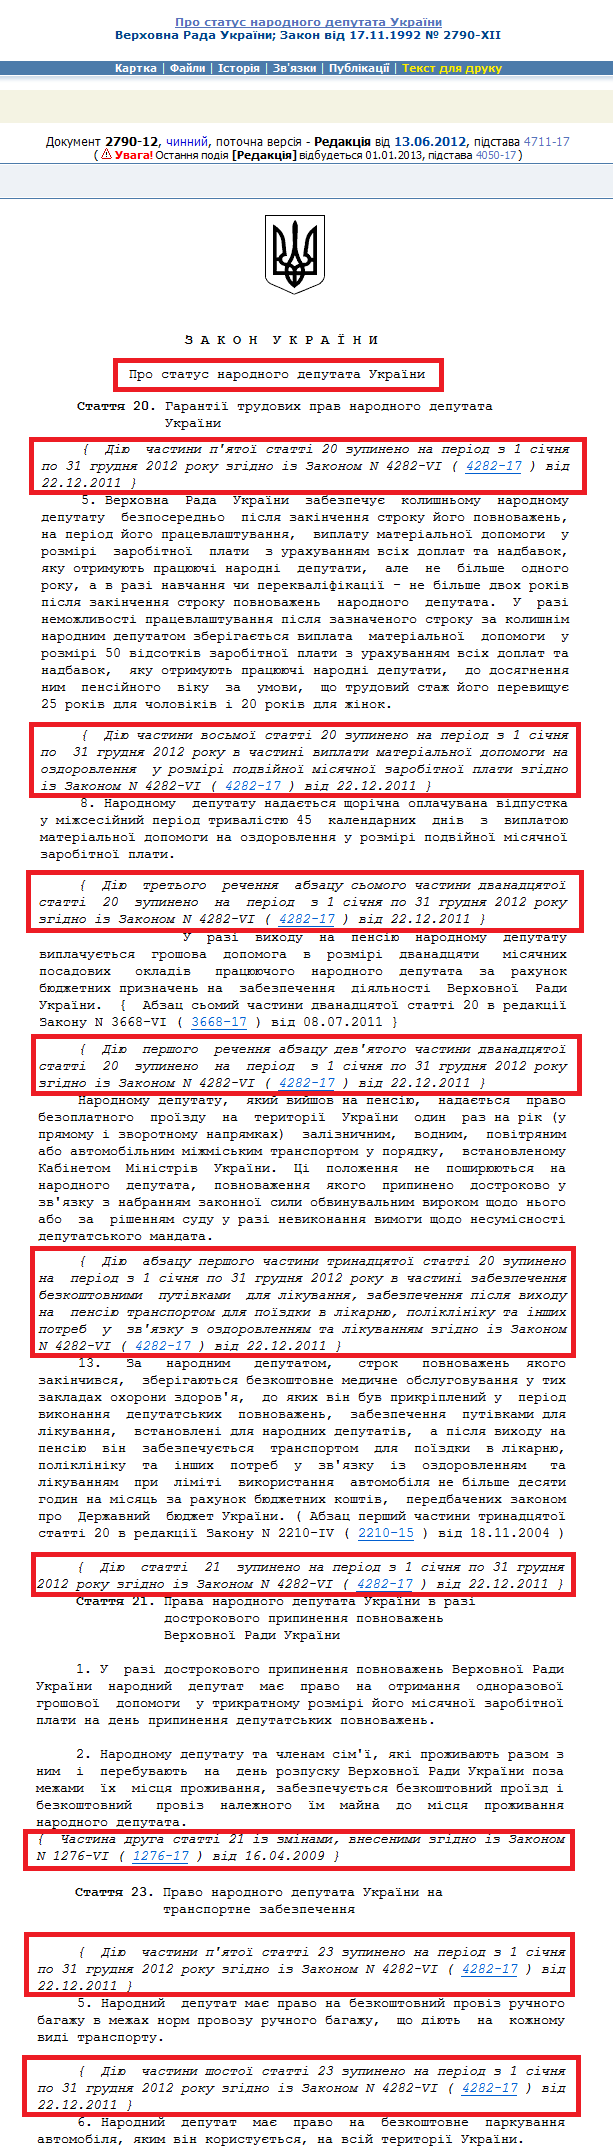 http://zakon2.rada.gov.ua/laws/show/2790-12